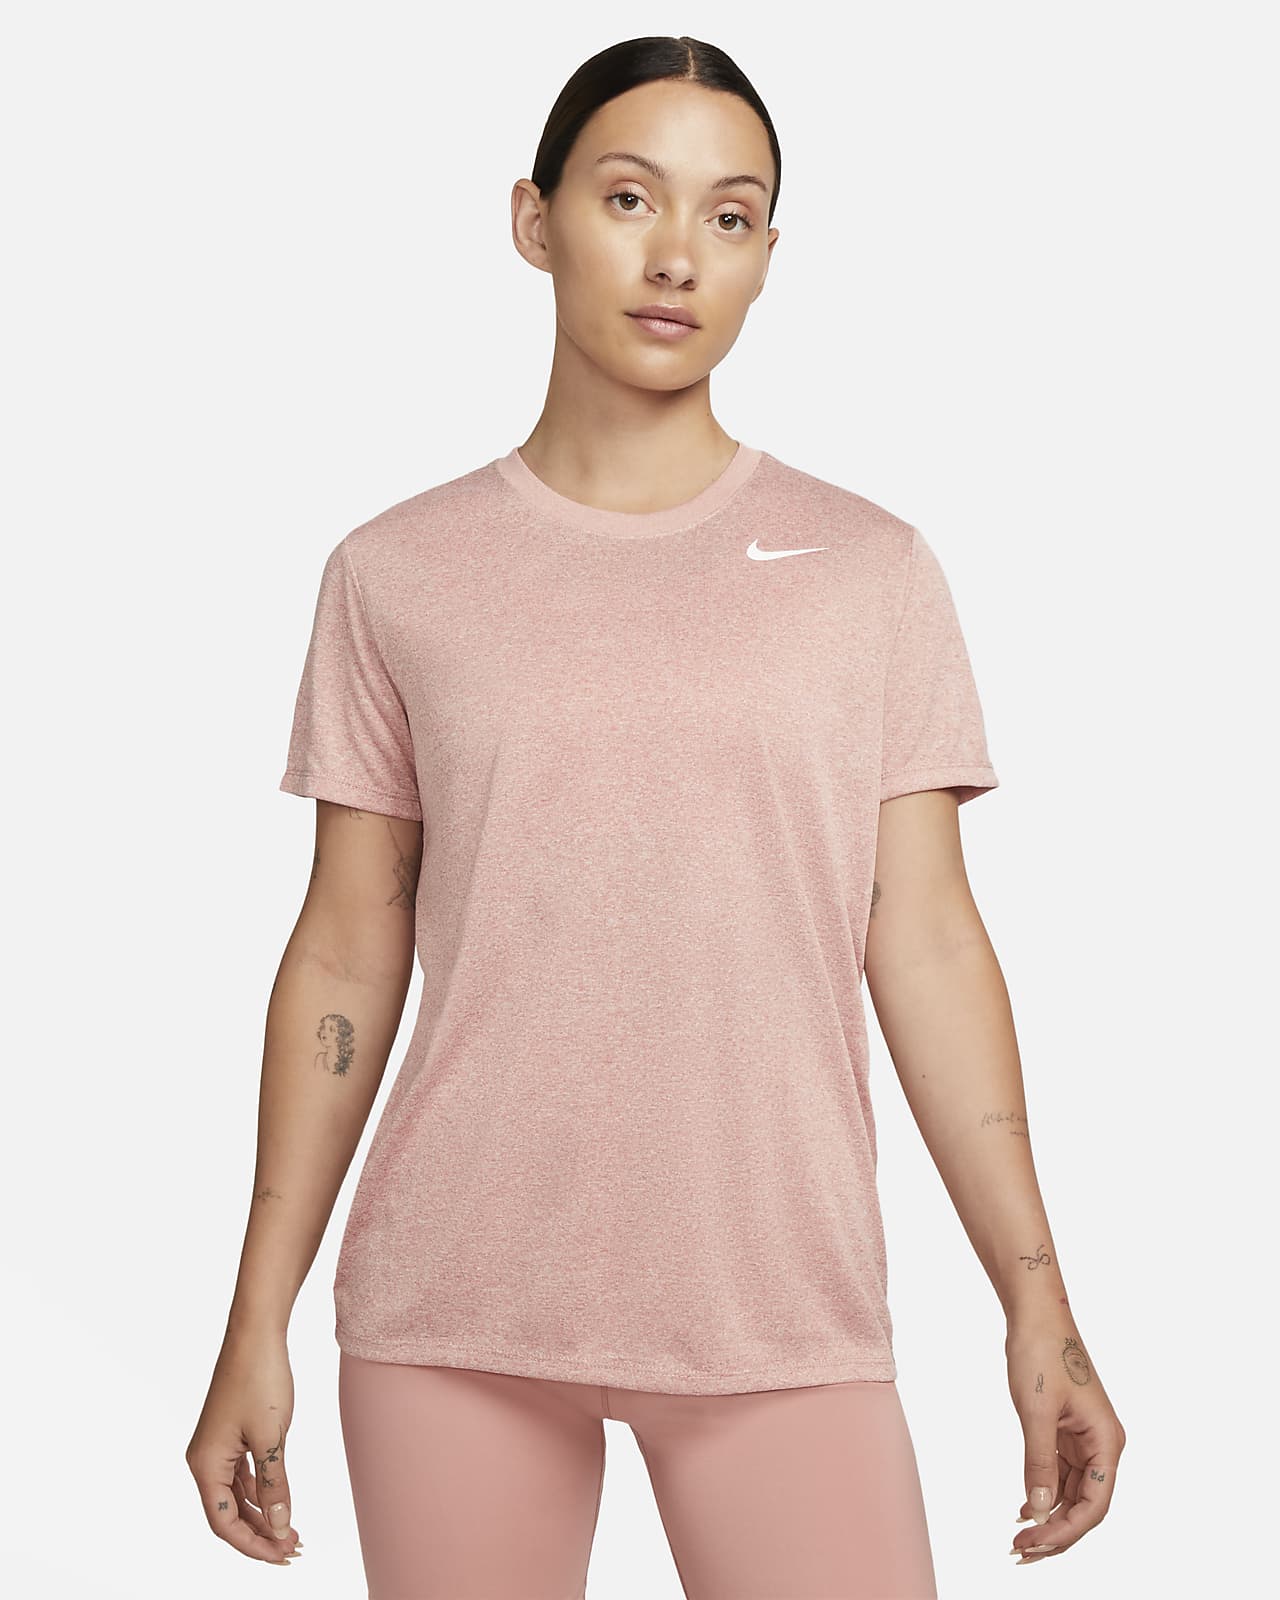 Nike Dri-Fit Women'S T-Shirt. Nike Vn